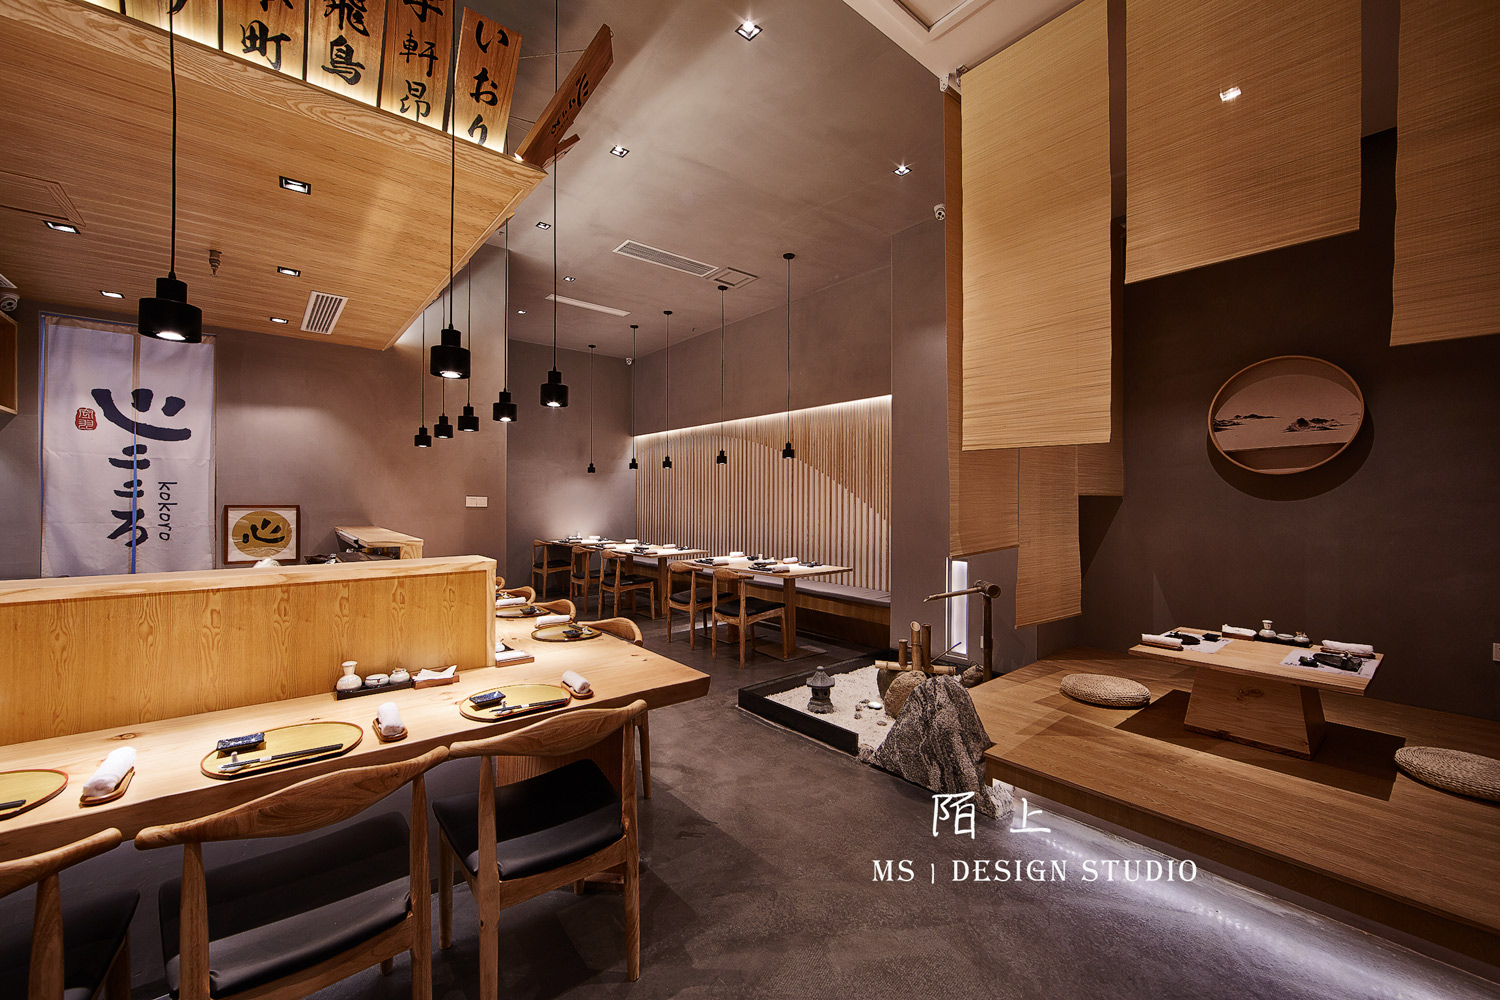  陌上设计 - 滨江天街心创作料理餐饮空间设计